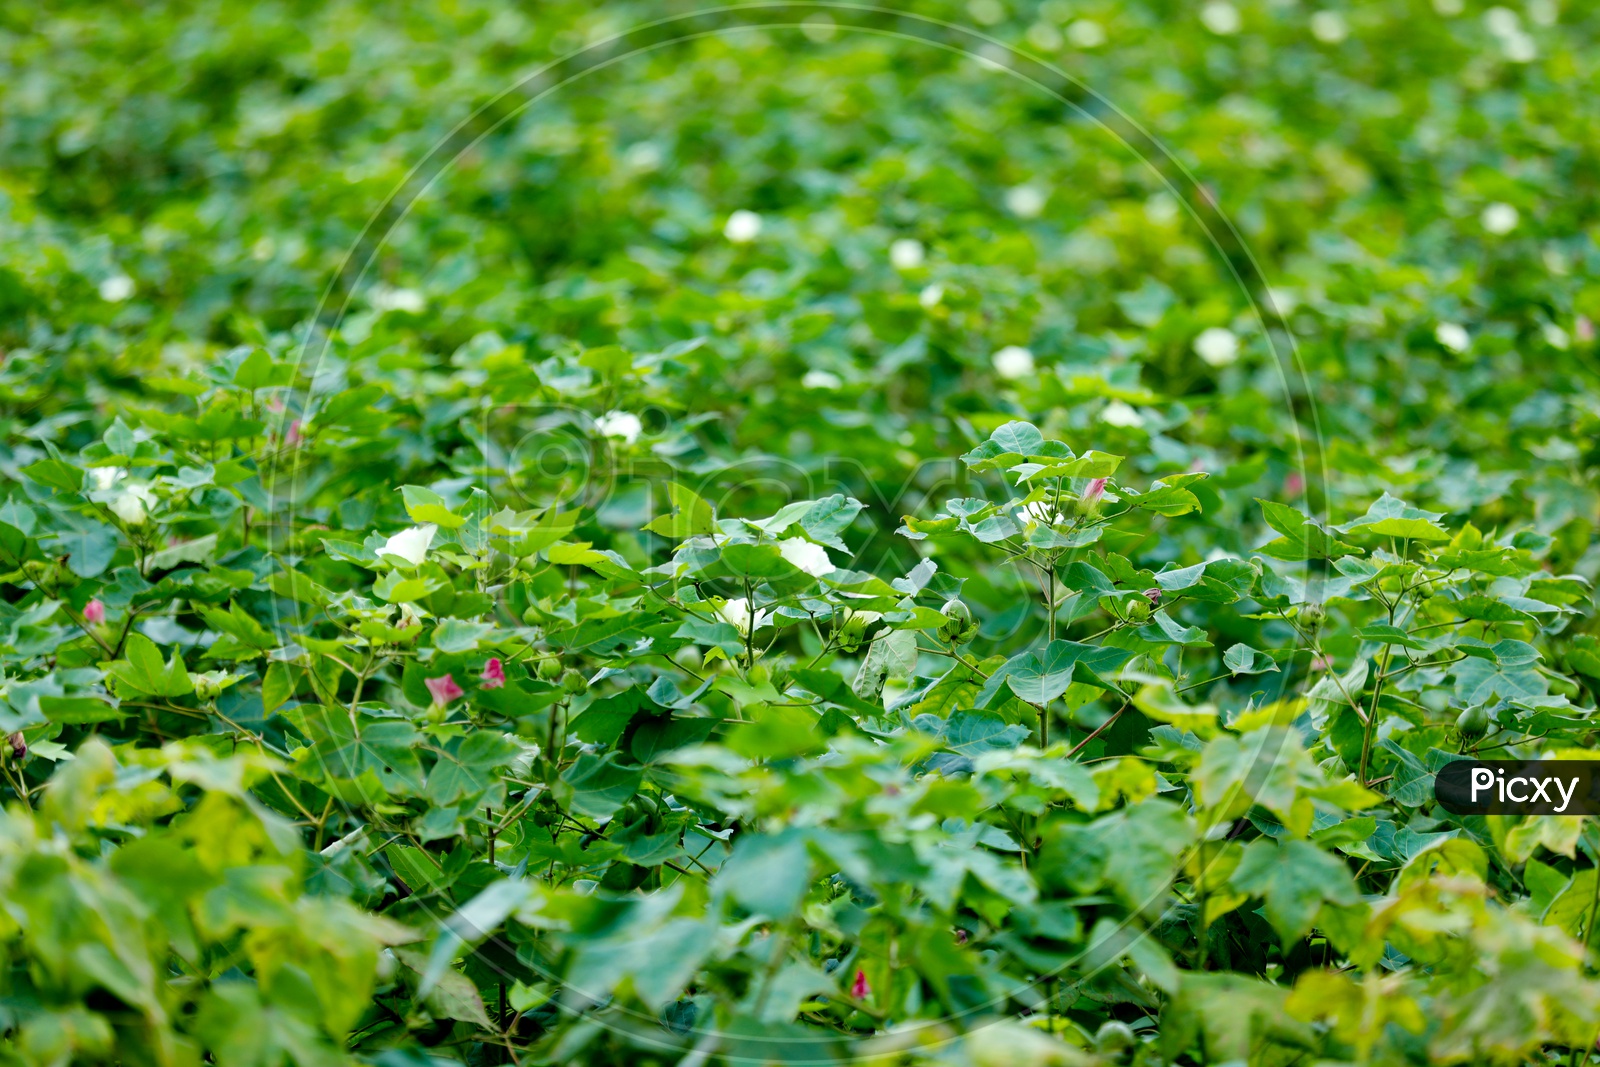 Green Cotton Crop in Farming Field